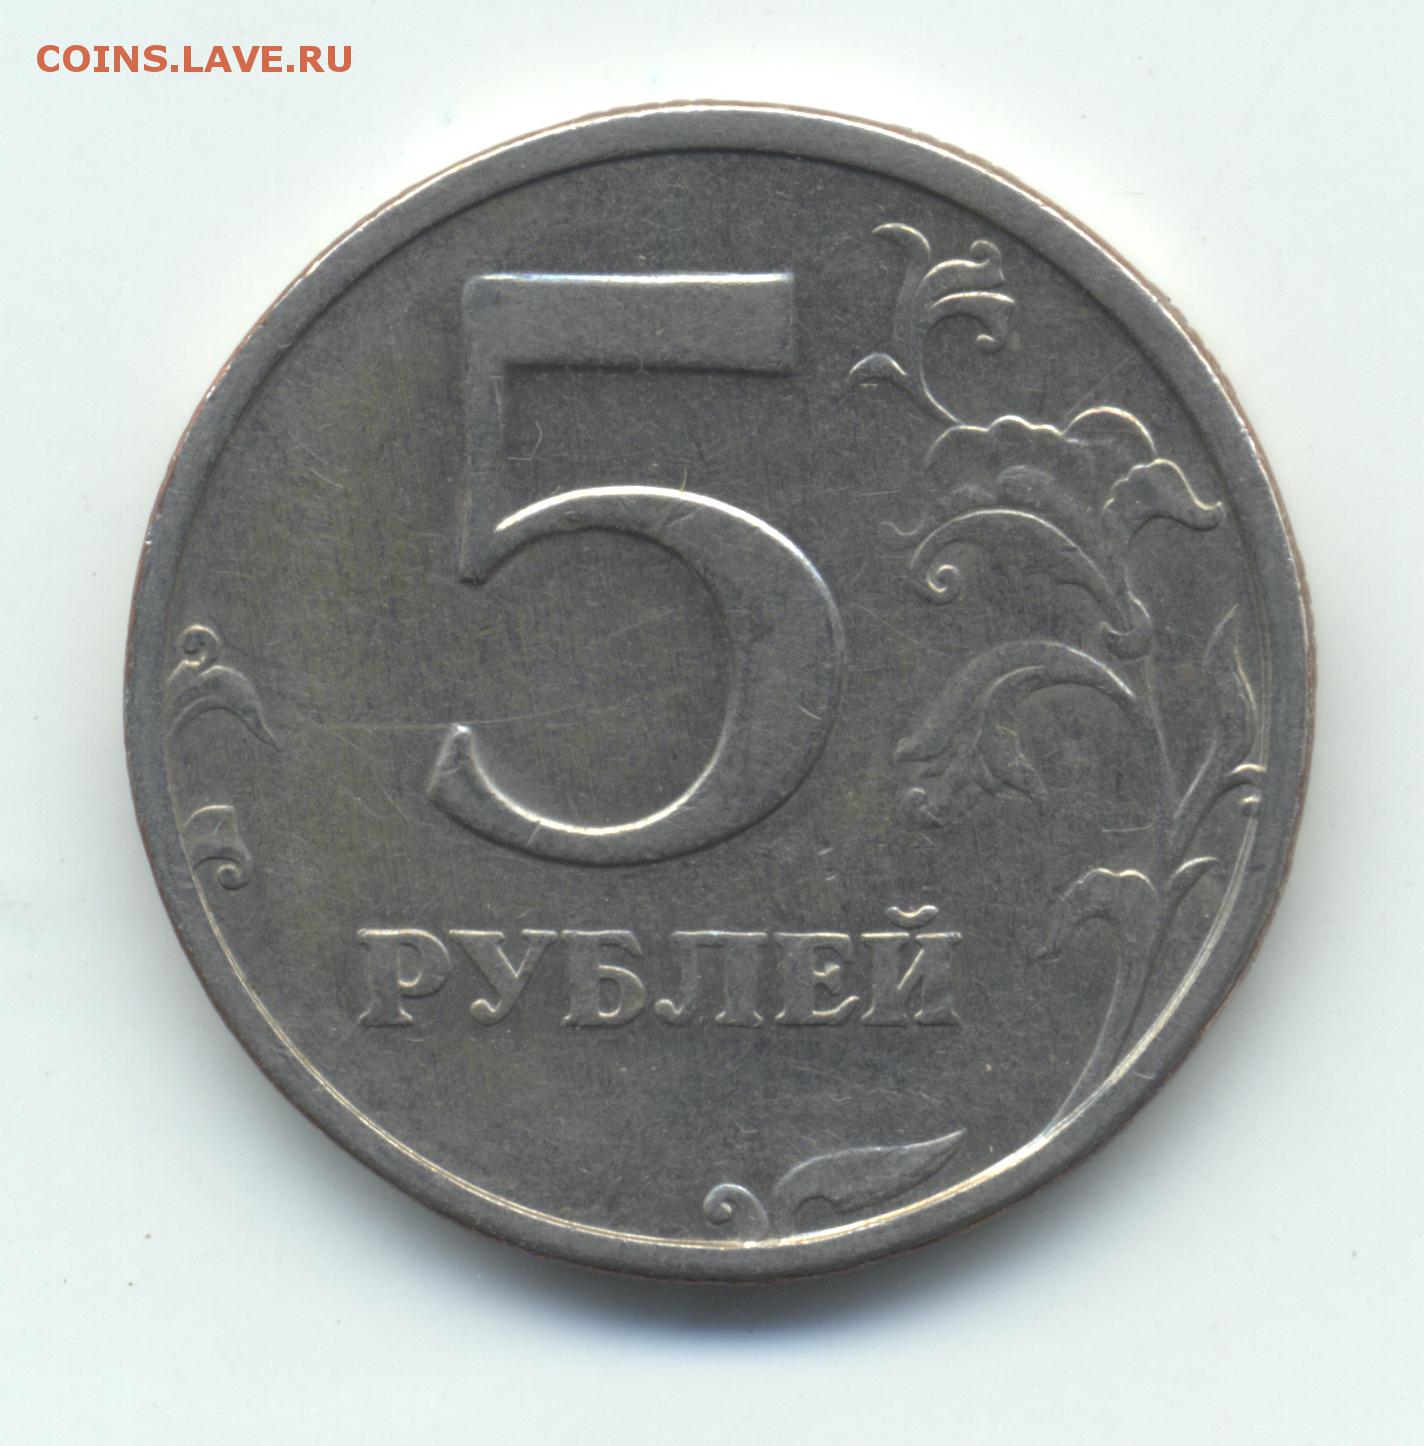 Момента 5 рублей. 5 Рублей 1997 СПМД шт 3. Монета 5 рублей 1991. 5 Рублей 1997 ММД. 5 Рублей 1997 года железные.